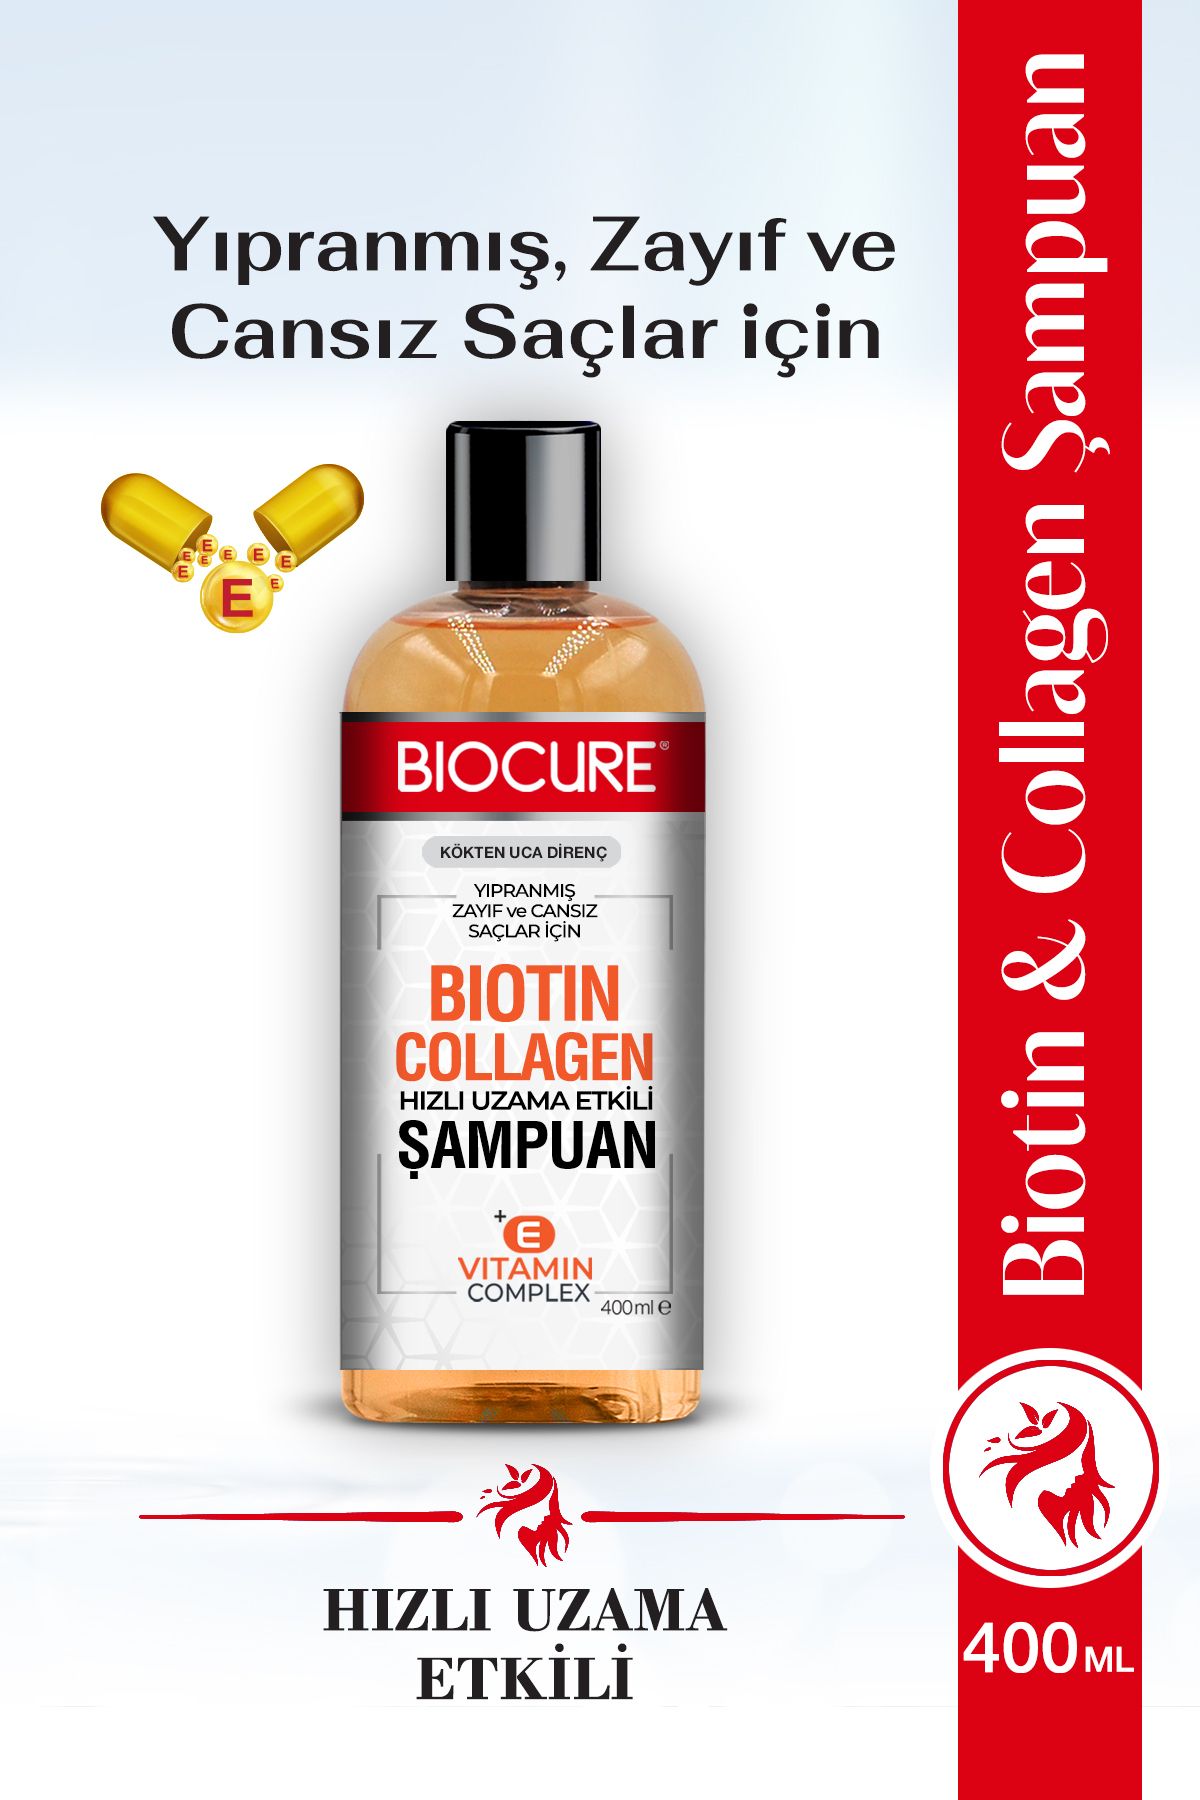 Biocure Biotin & Collagen + E Vitamin Kompleks, Yıpranmış, Zayıf Ve Cansız Saçlar Için Bakım Şampuanı